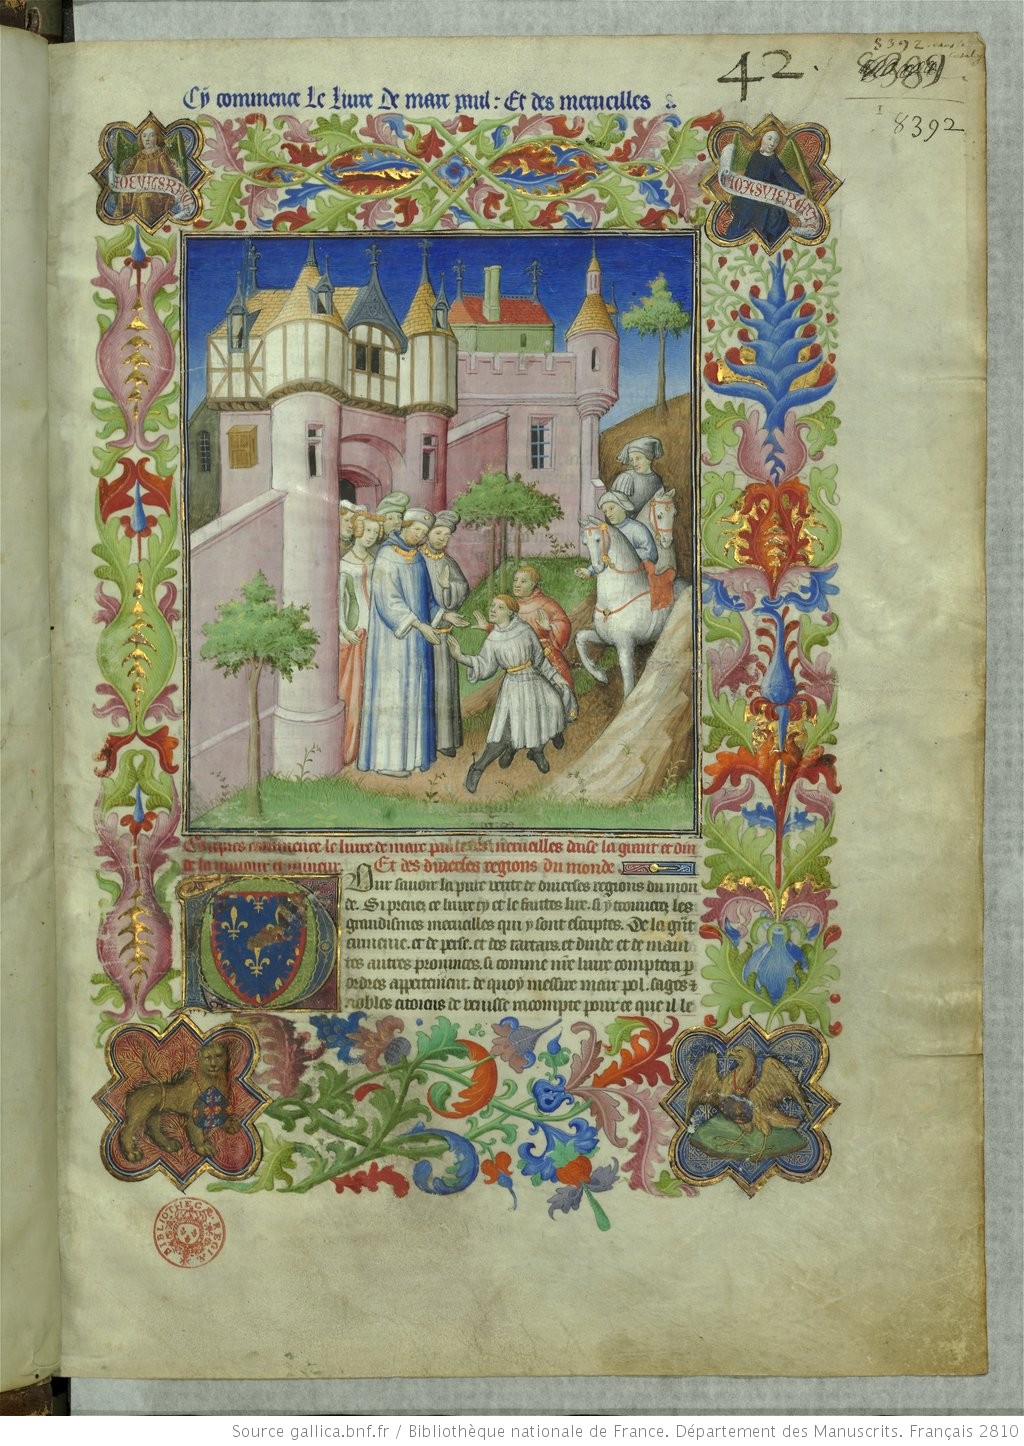 (Livre des merveilles), Il libro delle Meraviglie Il Milione, di Marco Polo. (Gallica, BNF).